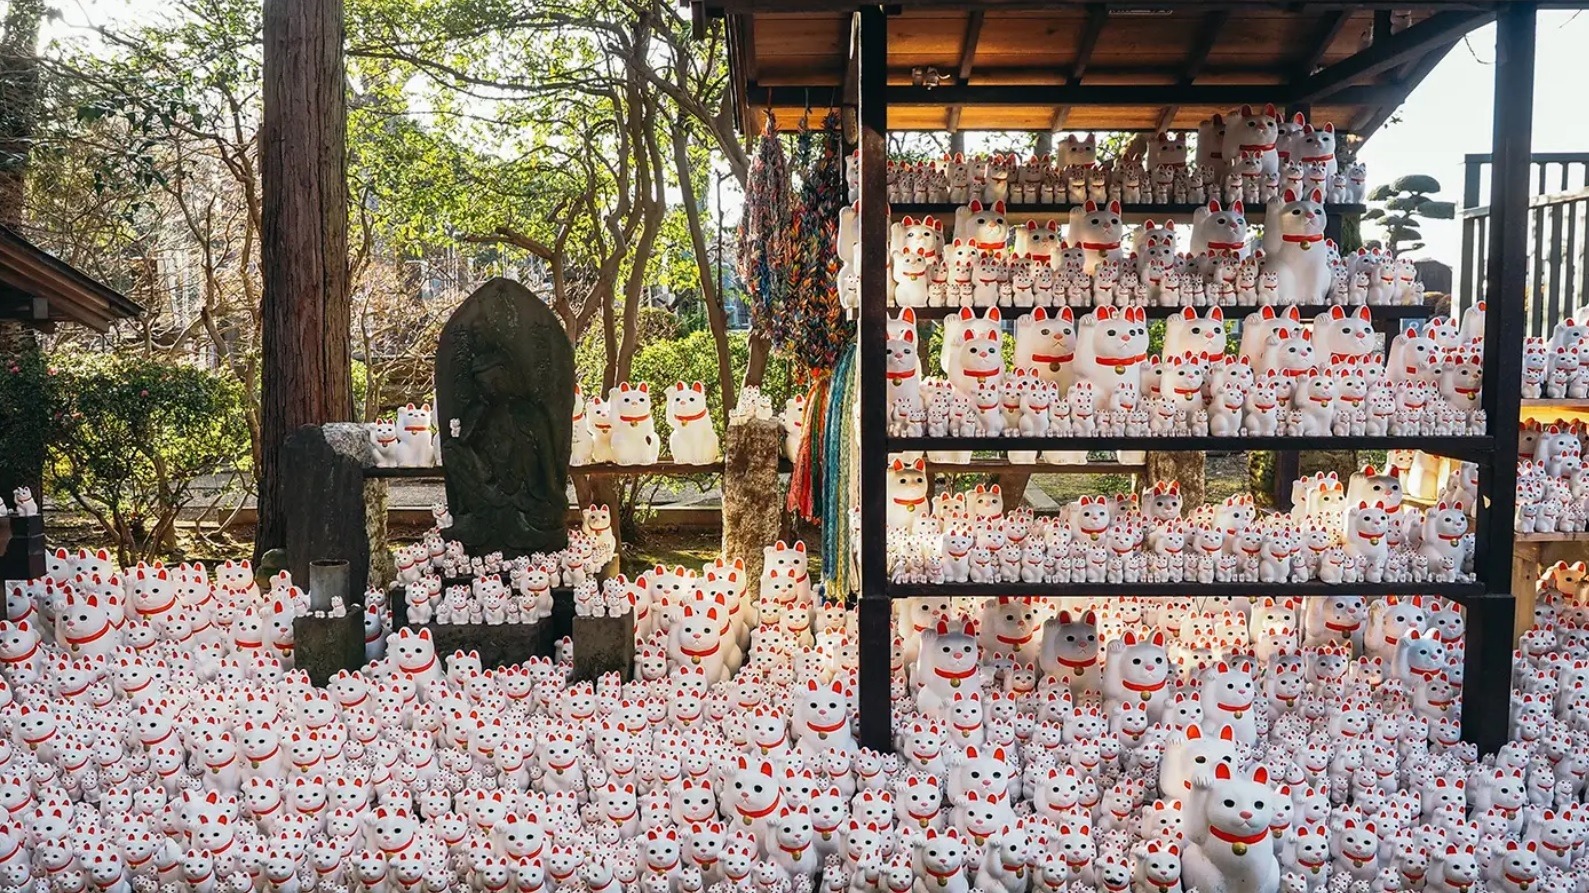 Ngôi đền có hàng nghìn tượng mèo vẫy tay ở Nhật Bản - Ảnh 3.